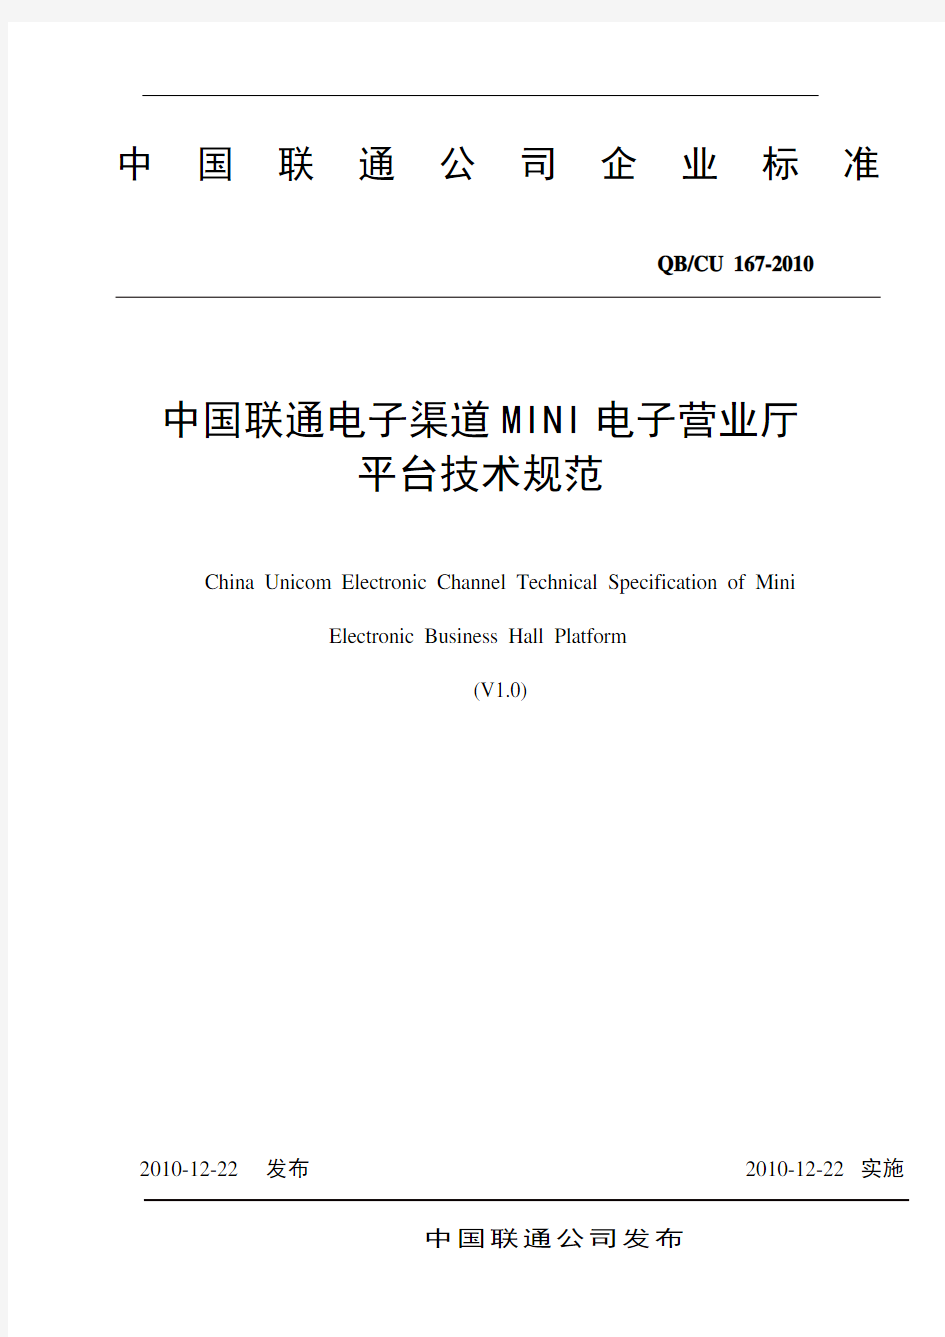 中国联通电子渠道MINI电子营业厅平台技术规范V1.0